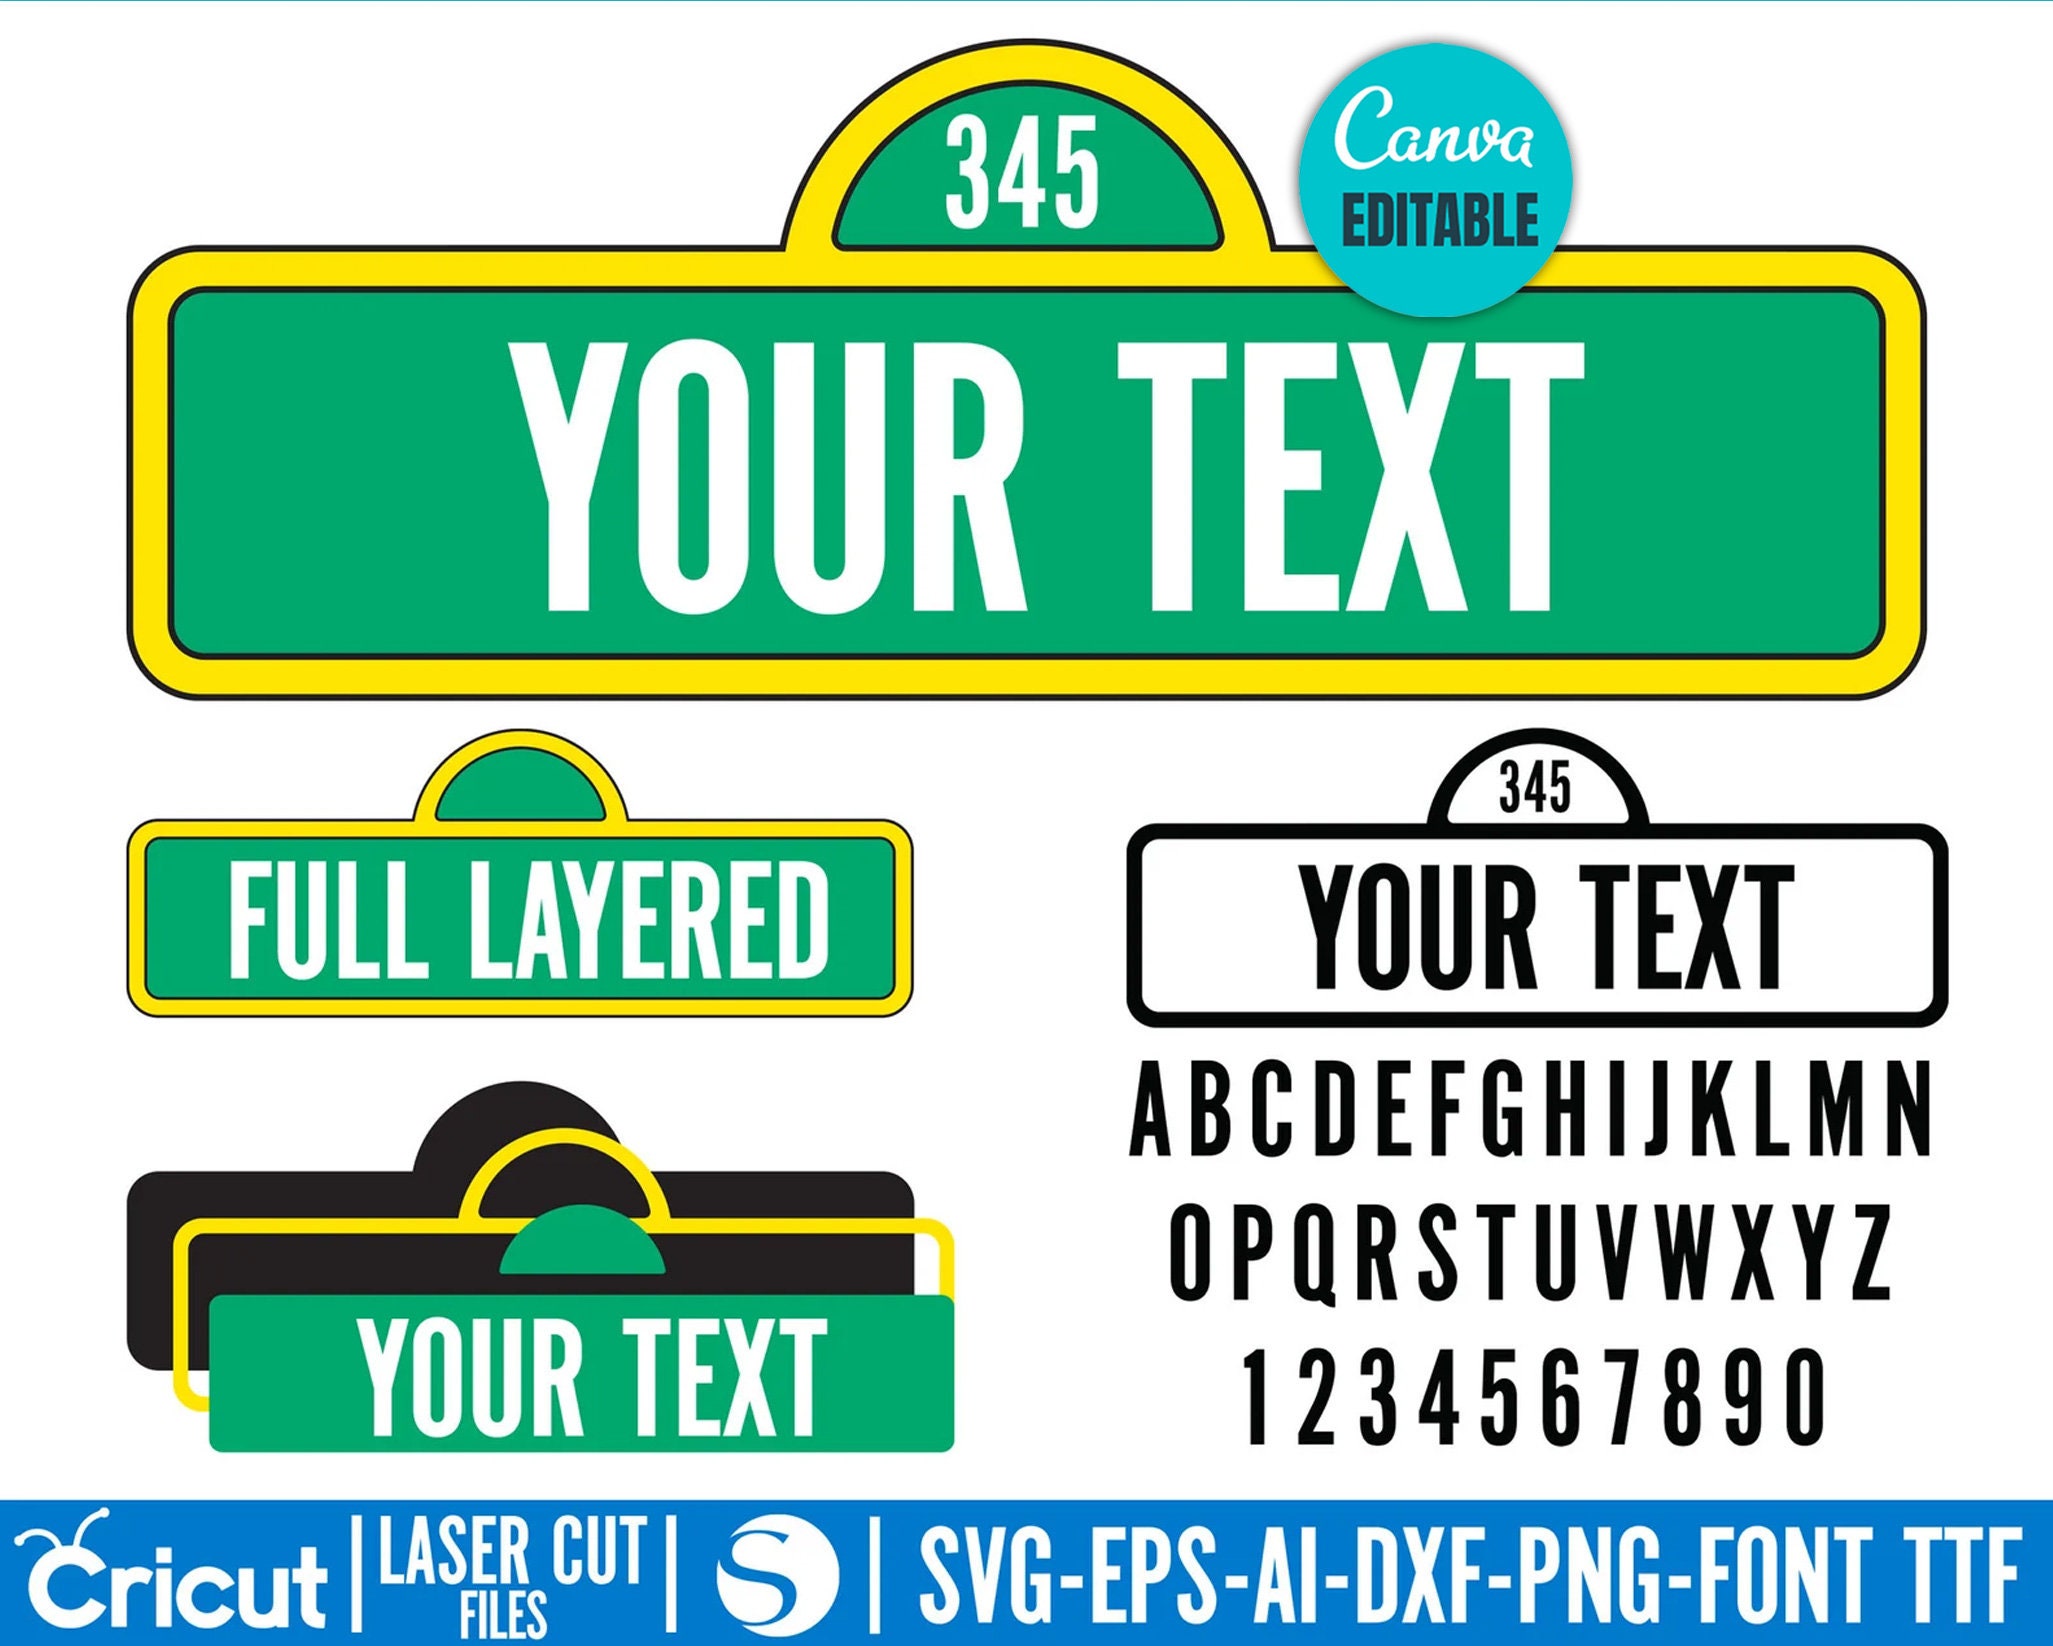 Sesame Street SVG File – Vector Design in, Svg, Eps, Dxf, and Jpeg